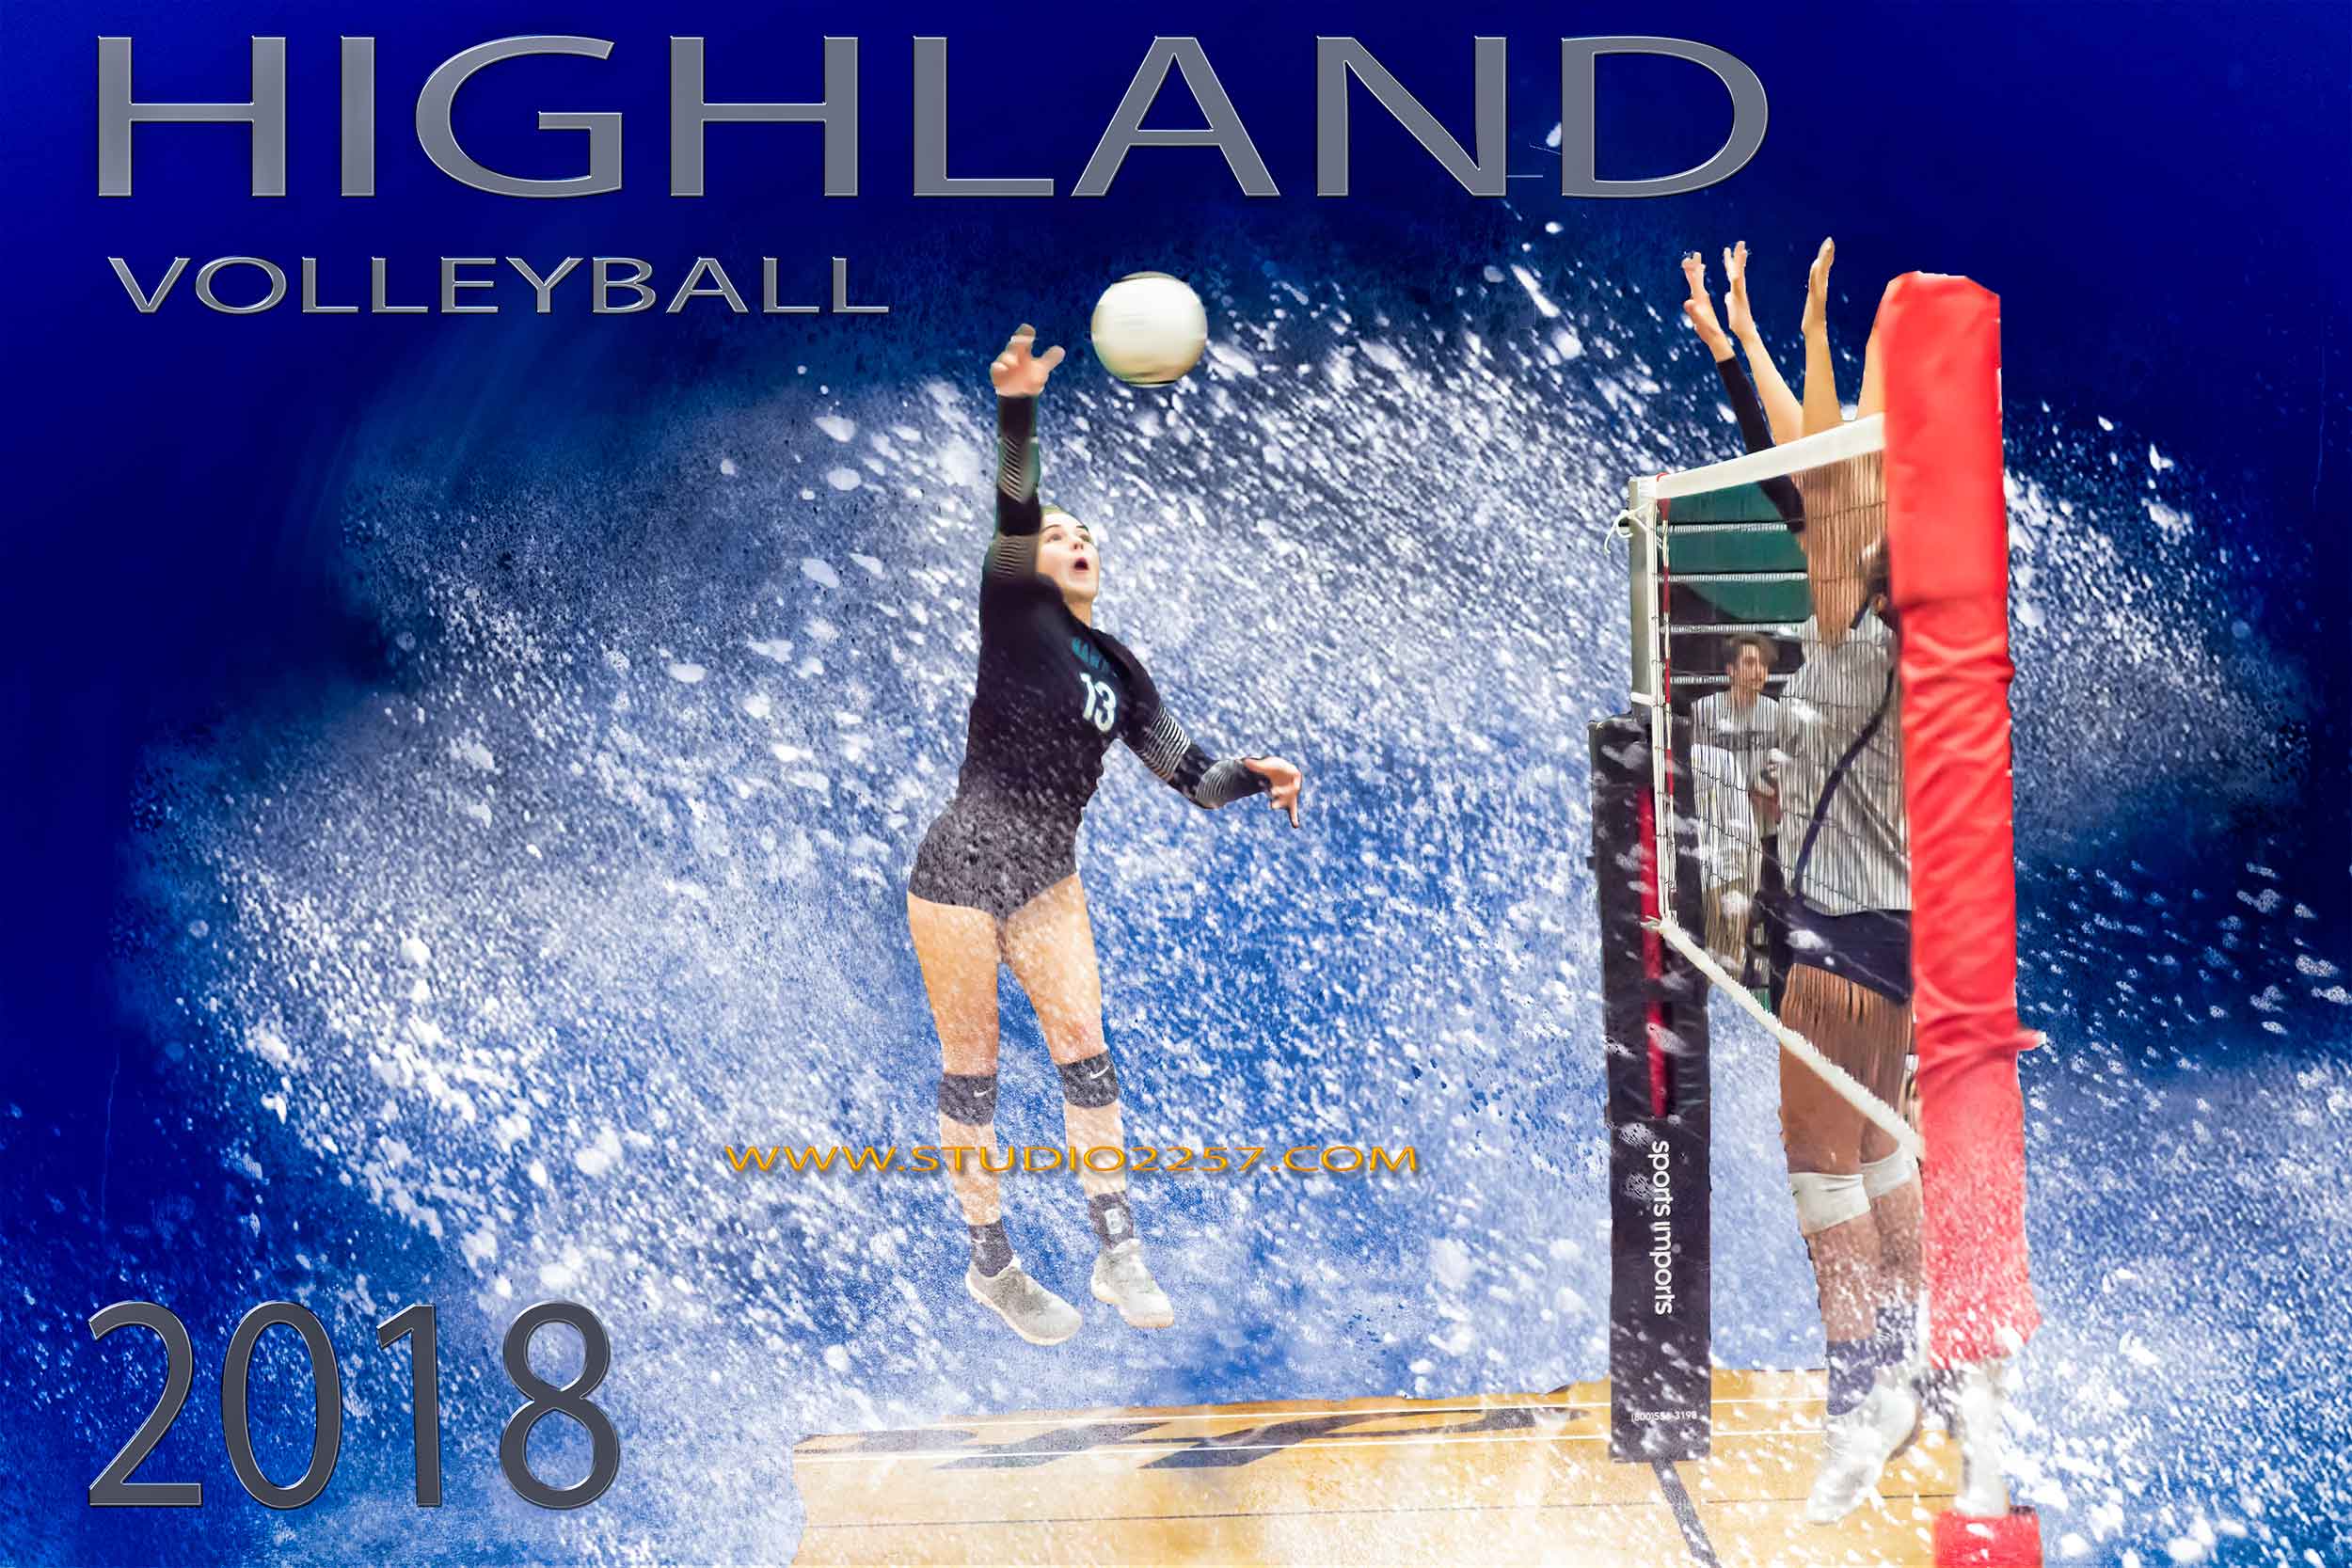 Highland-volleyball-powder-2w.jpg